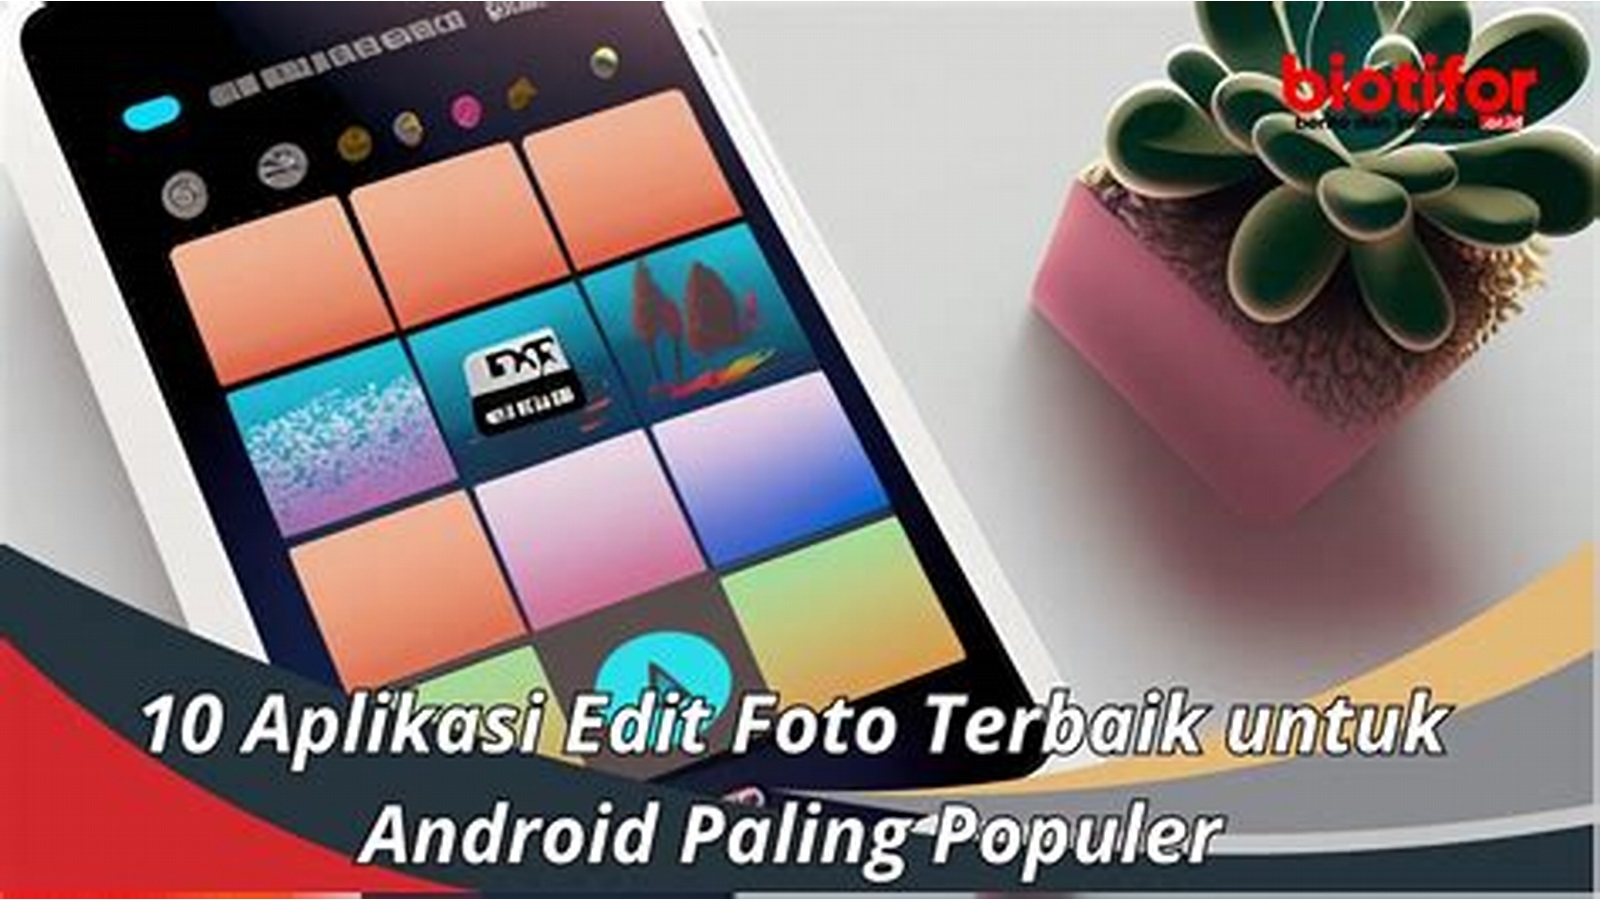 Aplikasi Edit Photo Terbaik untuk Android di Indonesia